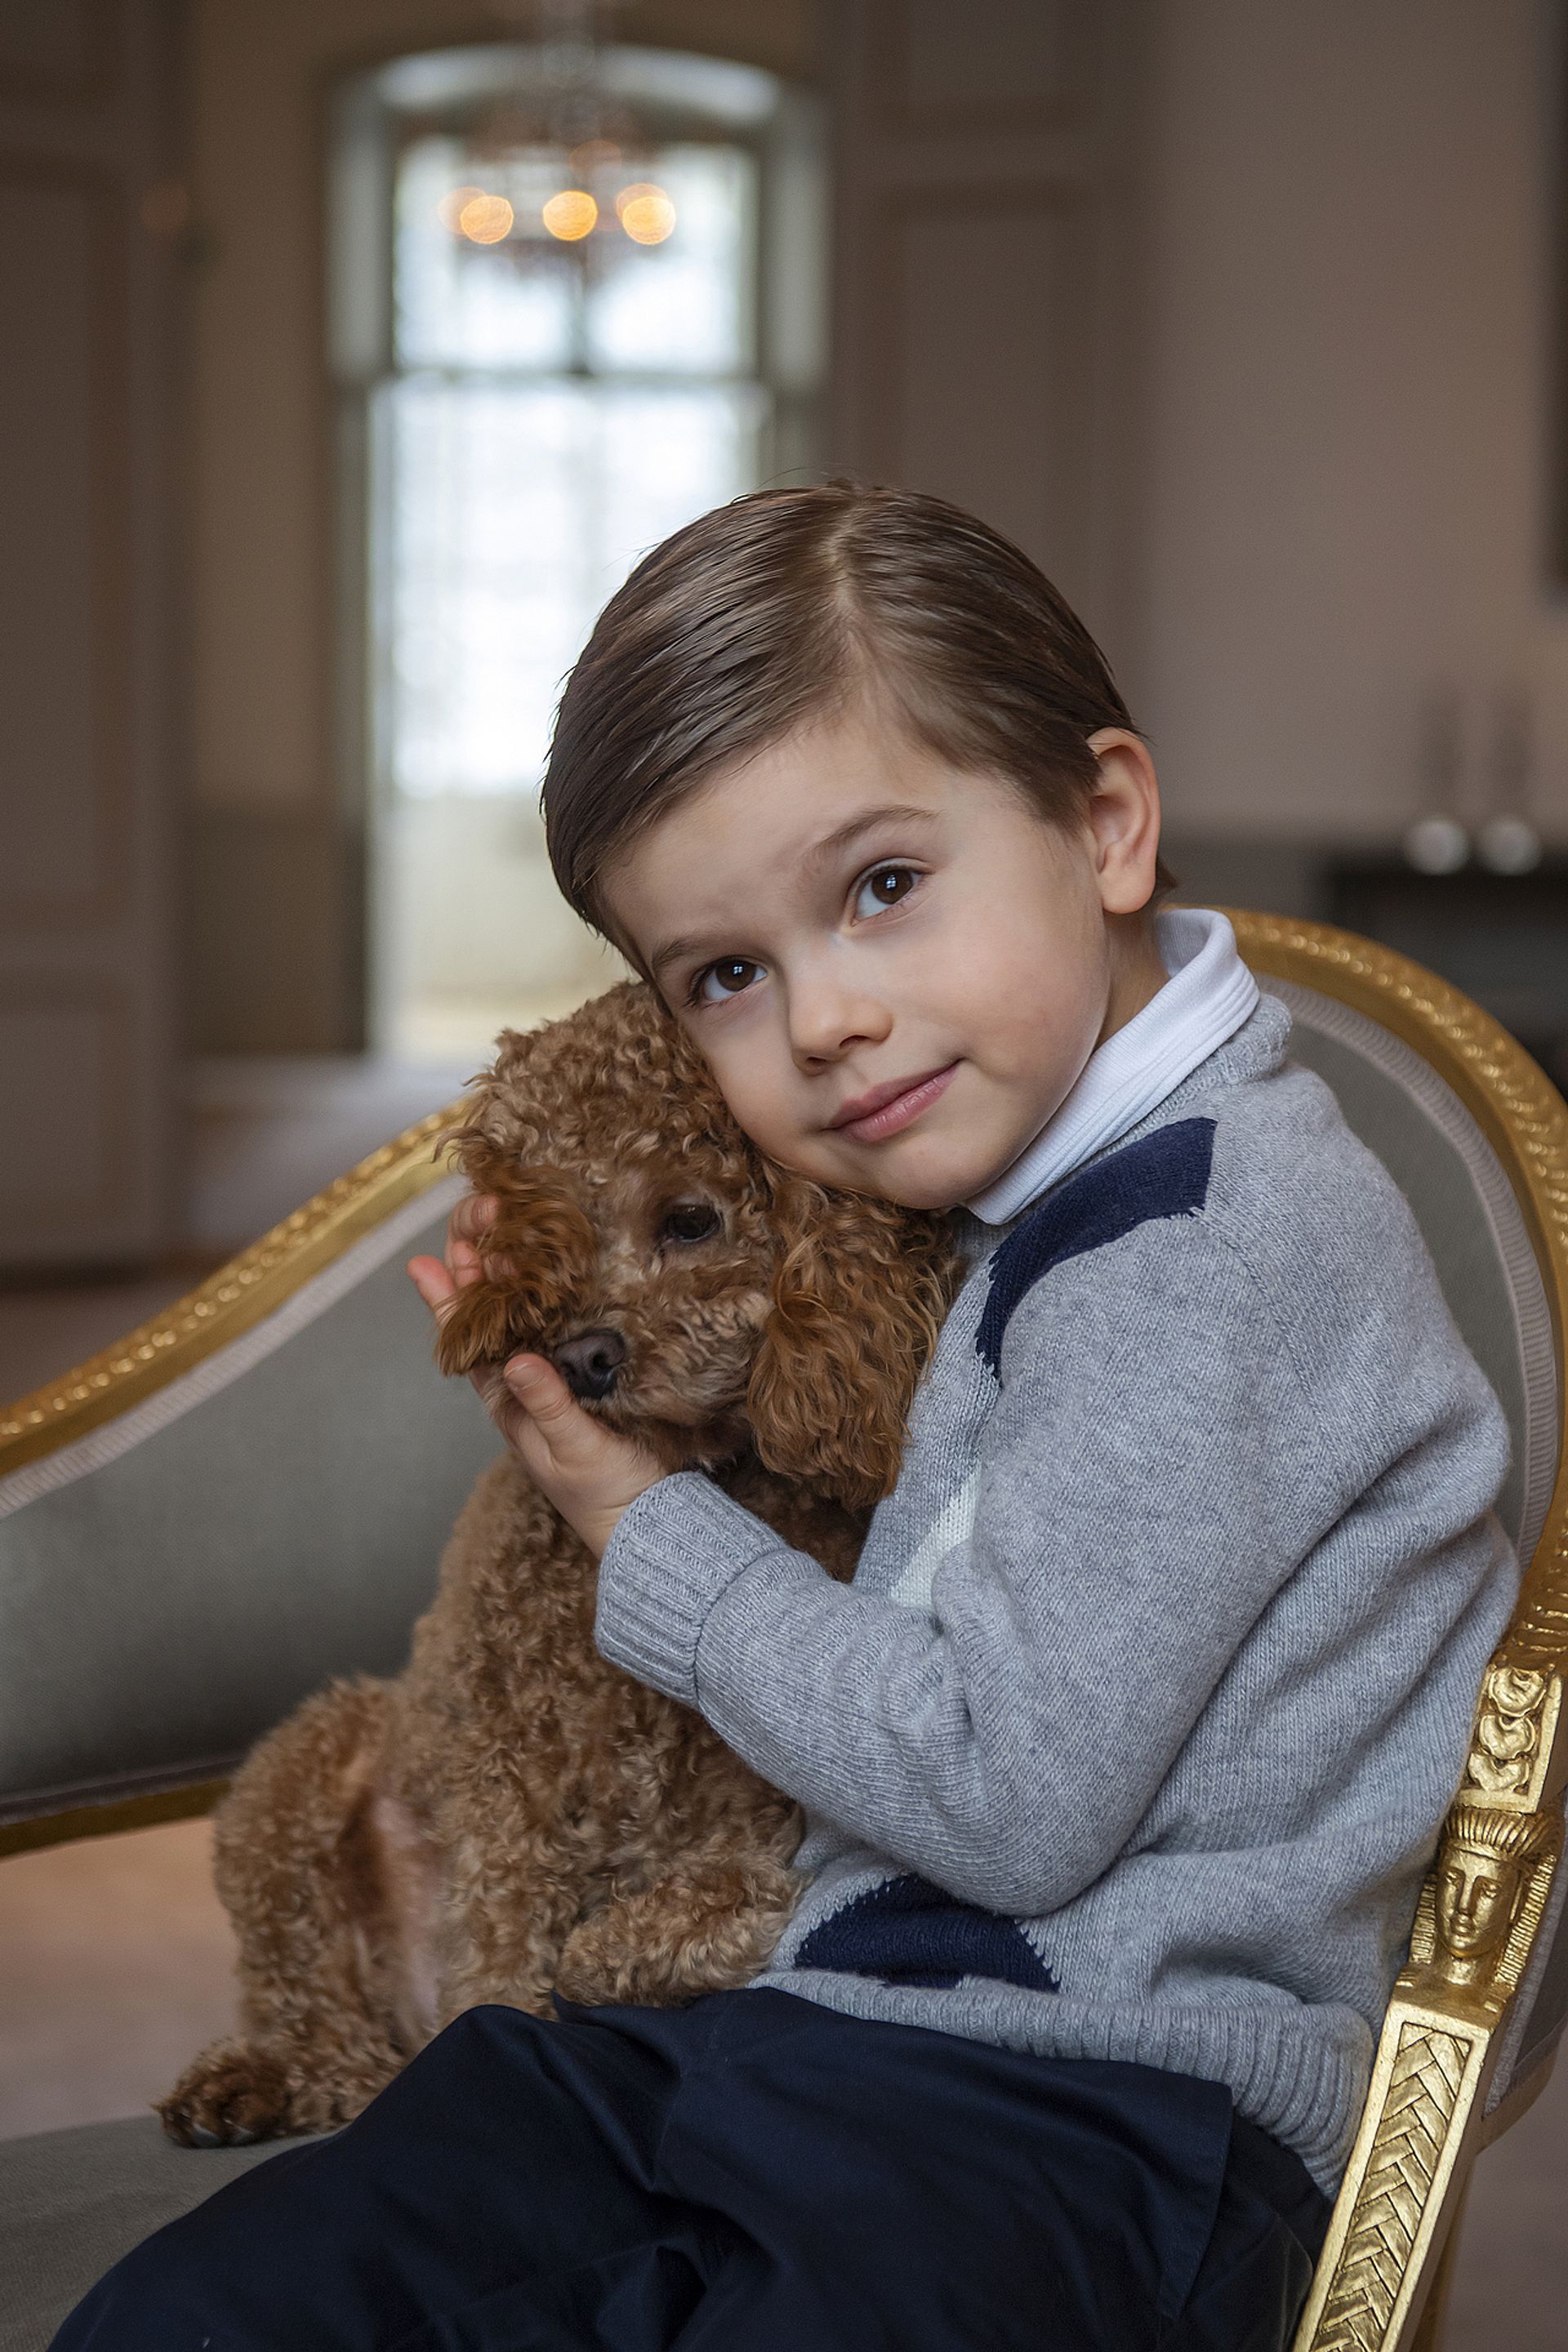 Voor zijn vijfde verjaardag gaat Oscar op de foto met hondje Rio.